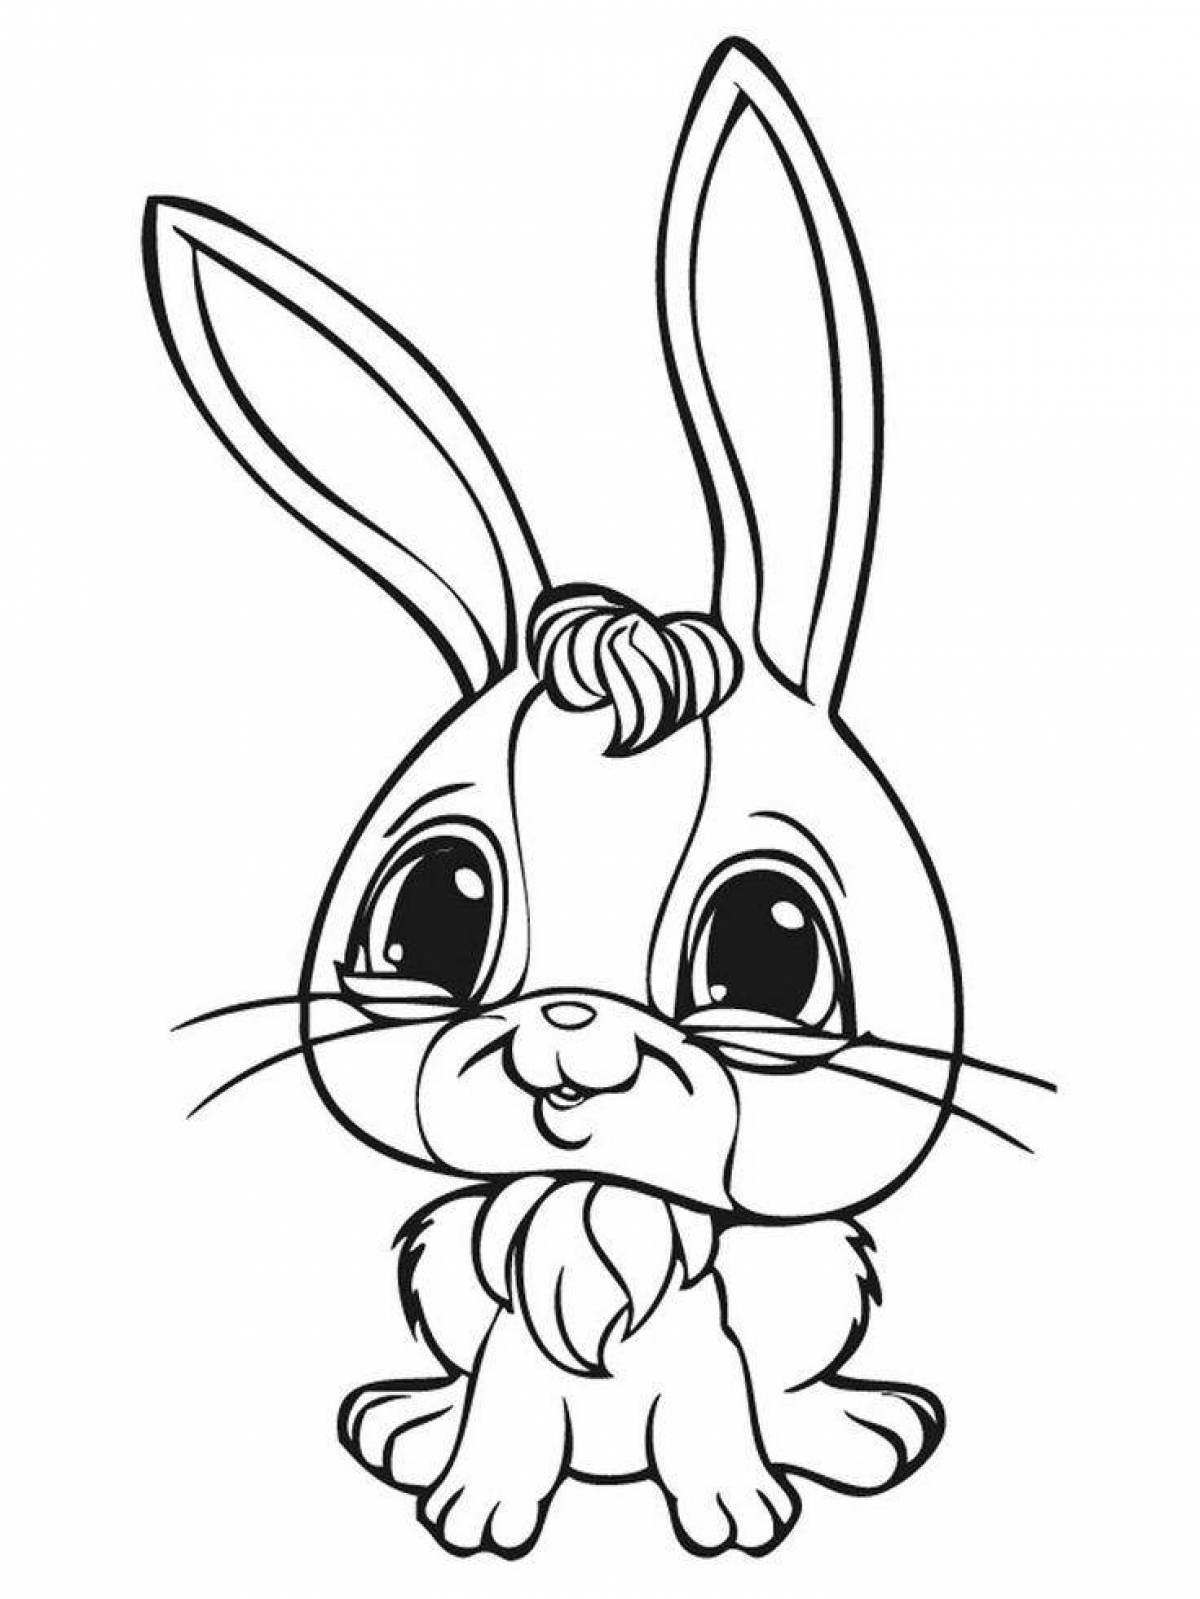 Радостный рисунок кролика-раскраски